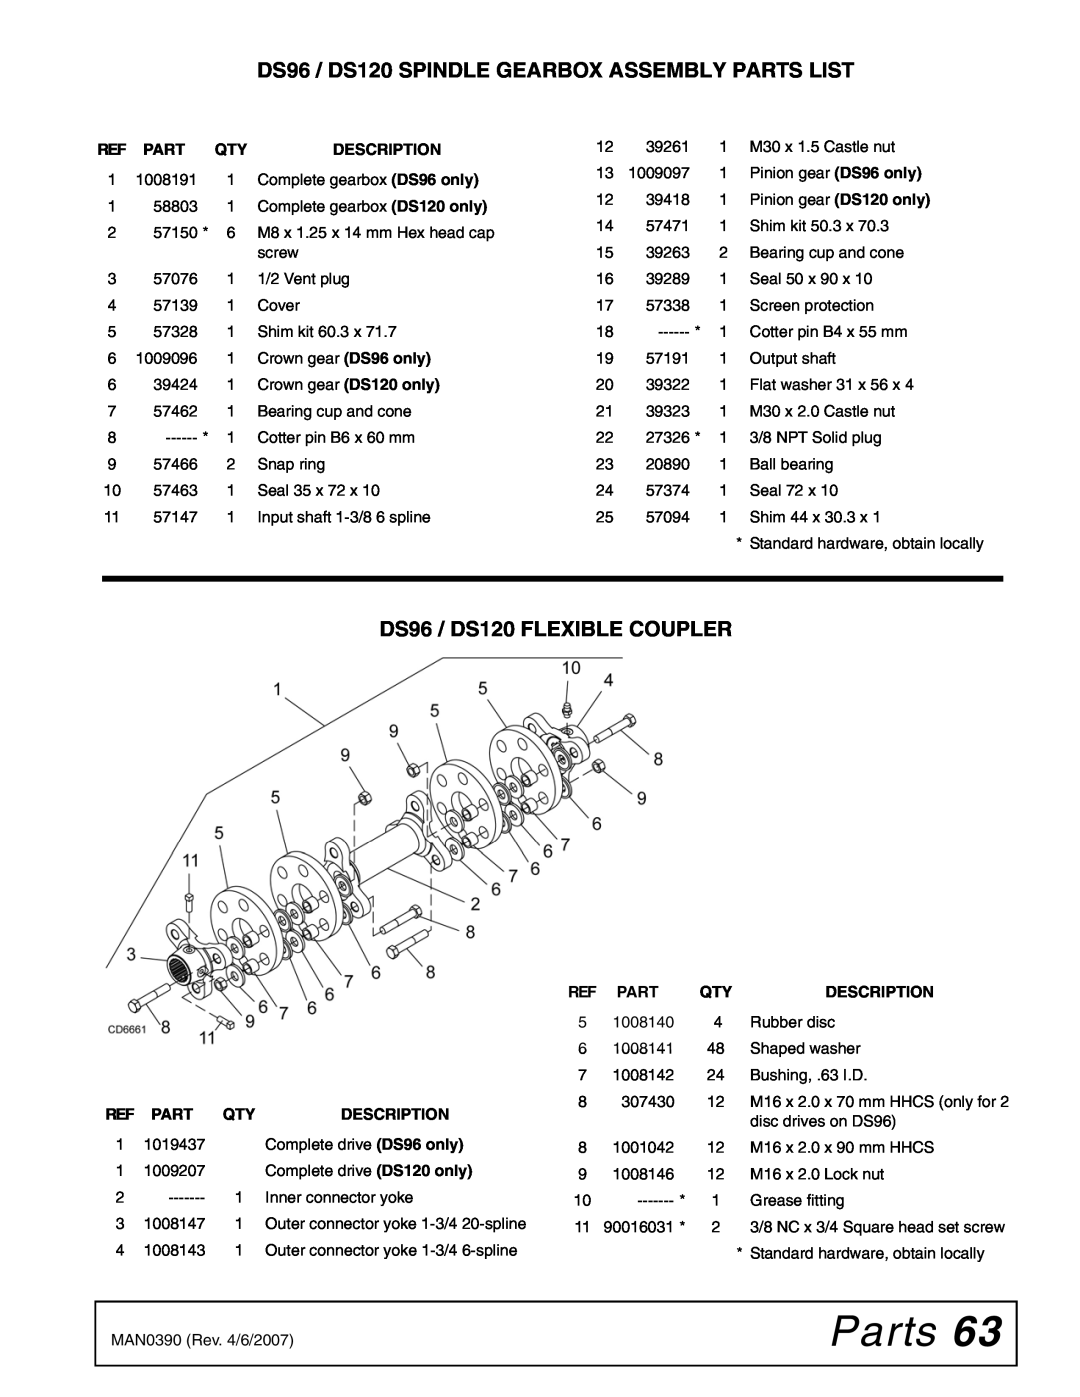 Woods Equipment Parts, DS96 / DS120 SPINDLE GEARBOX ASSEMBLY PARTS LIST, DS96 / DS120 FLEXIBLE COUPLER, Description 